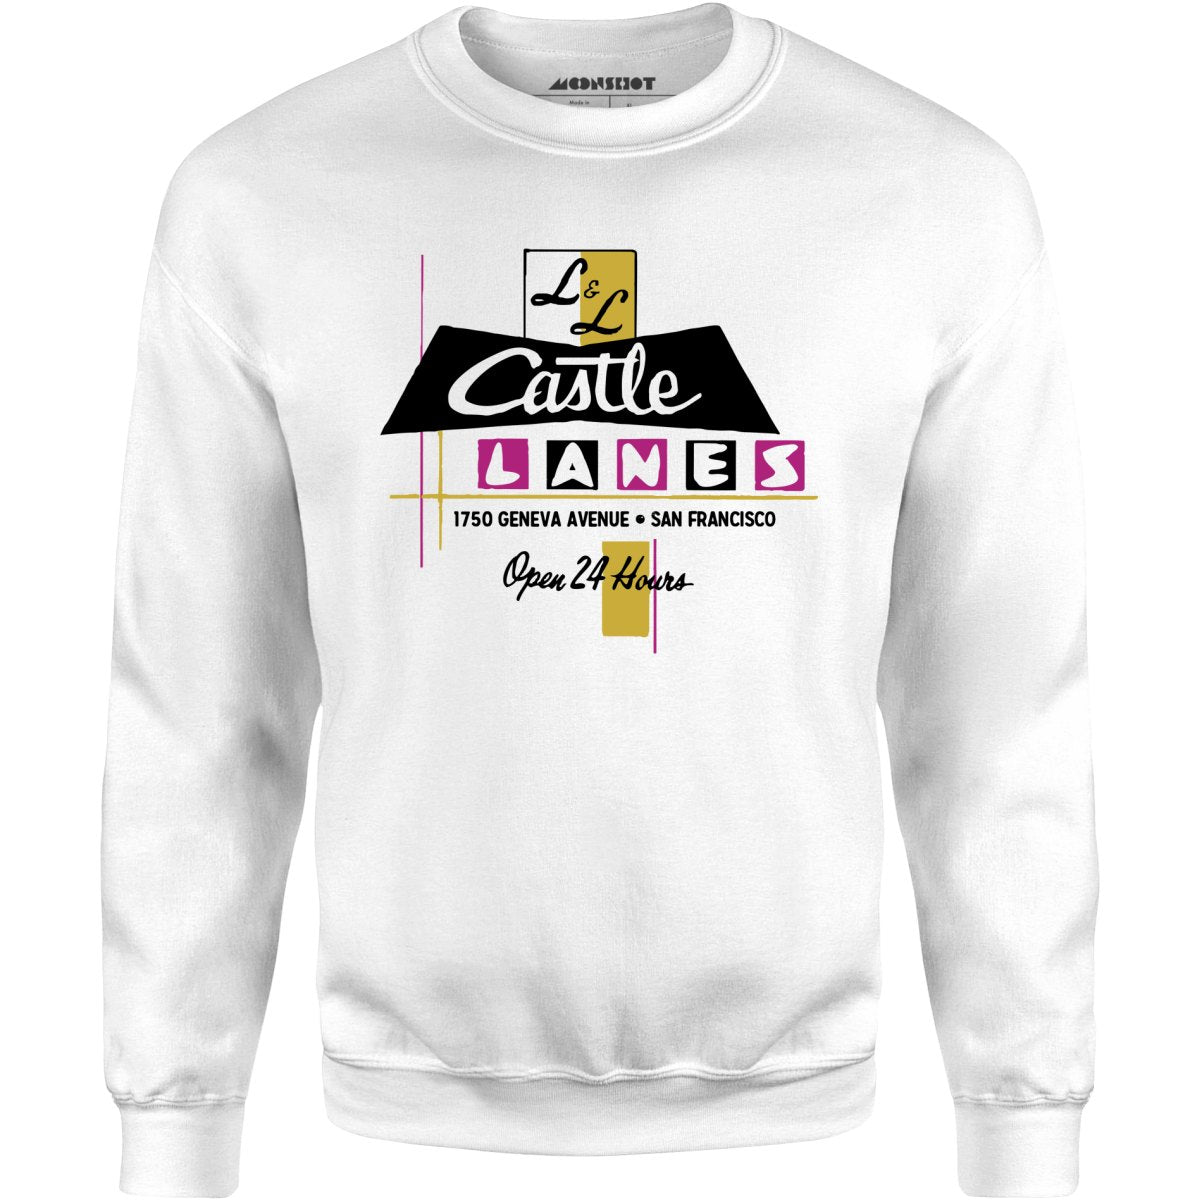 L & L Castle Lanes - San Francisco, CA - Vintage Bowling Alley - Unisex Sweatshirt